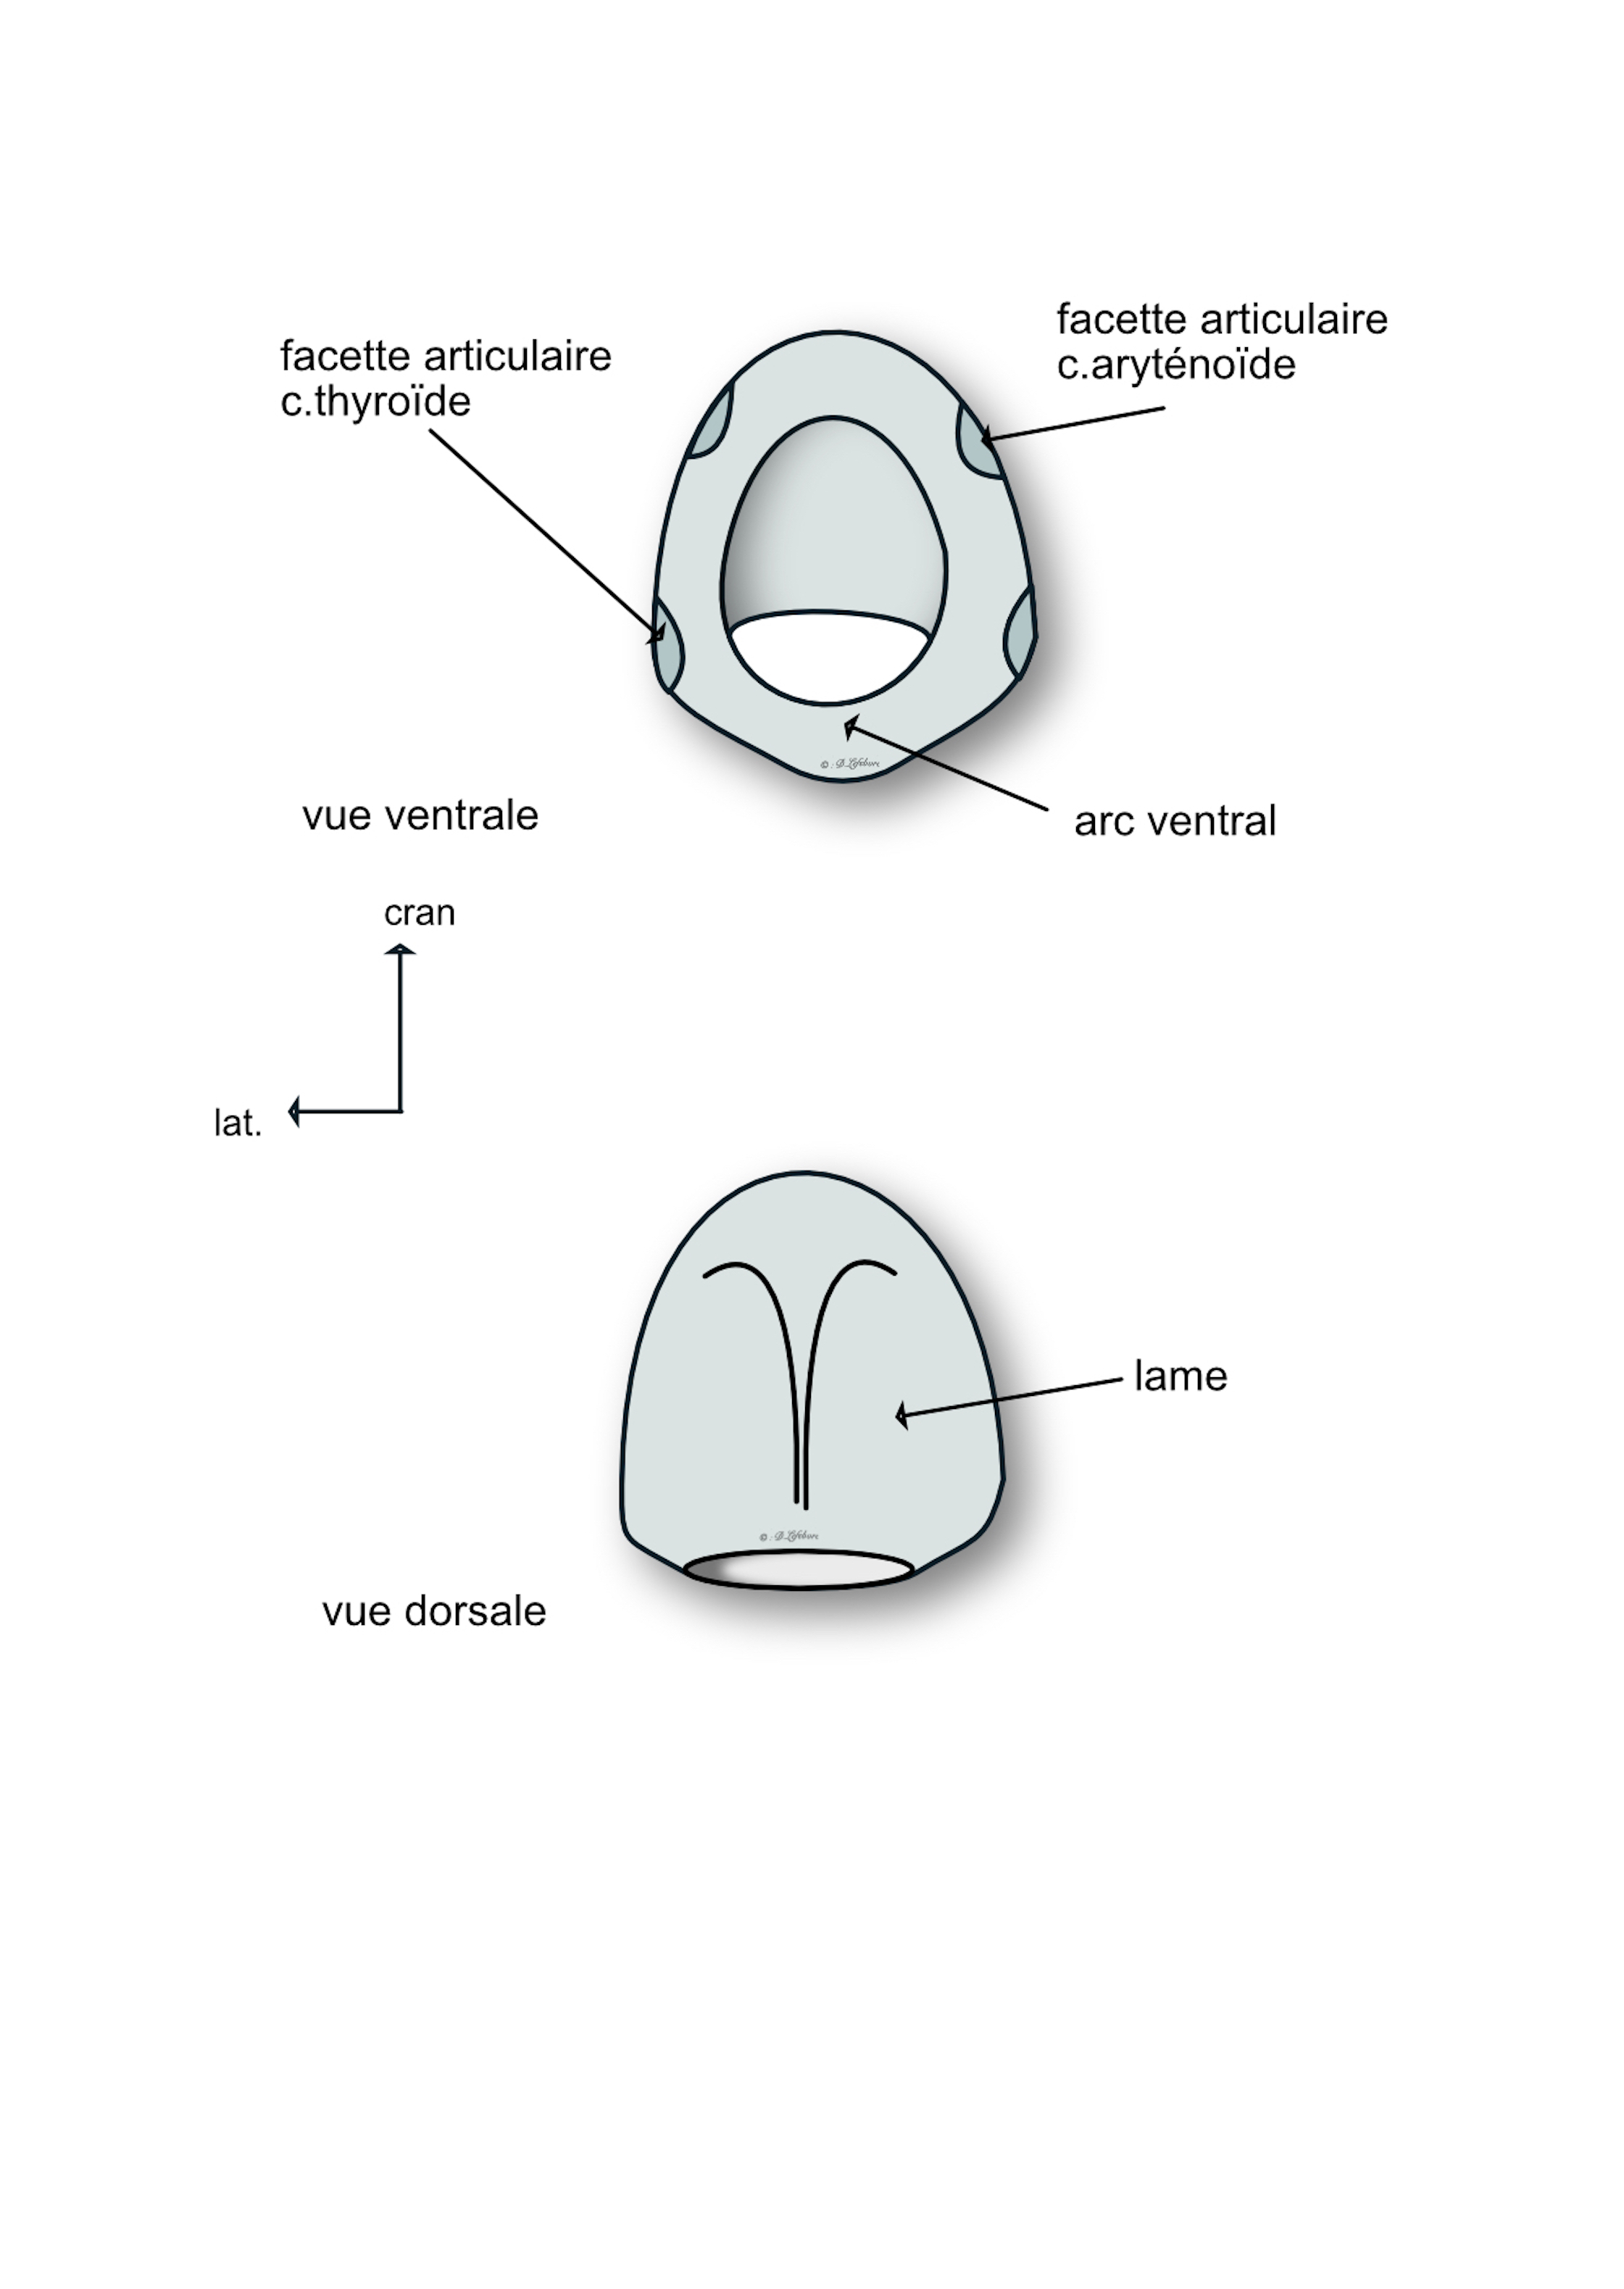 cartilage cricoide 